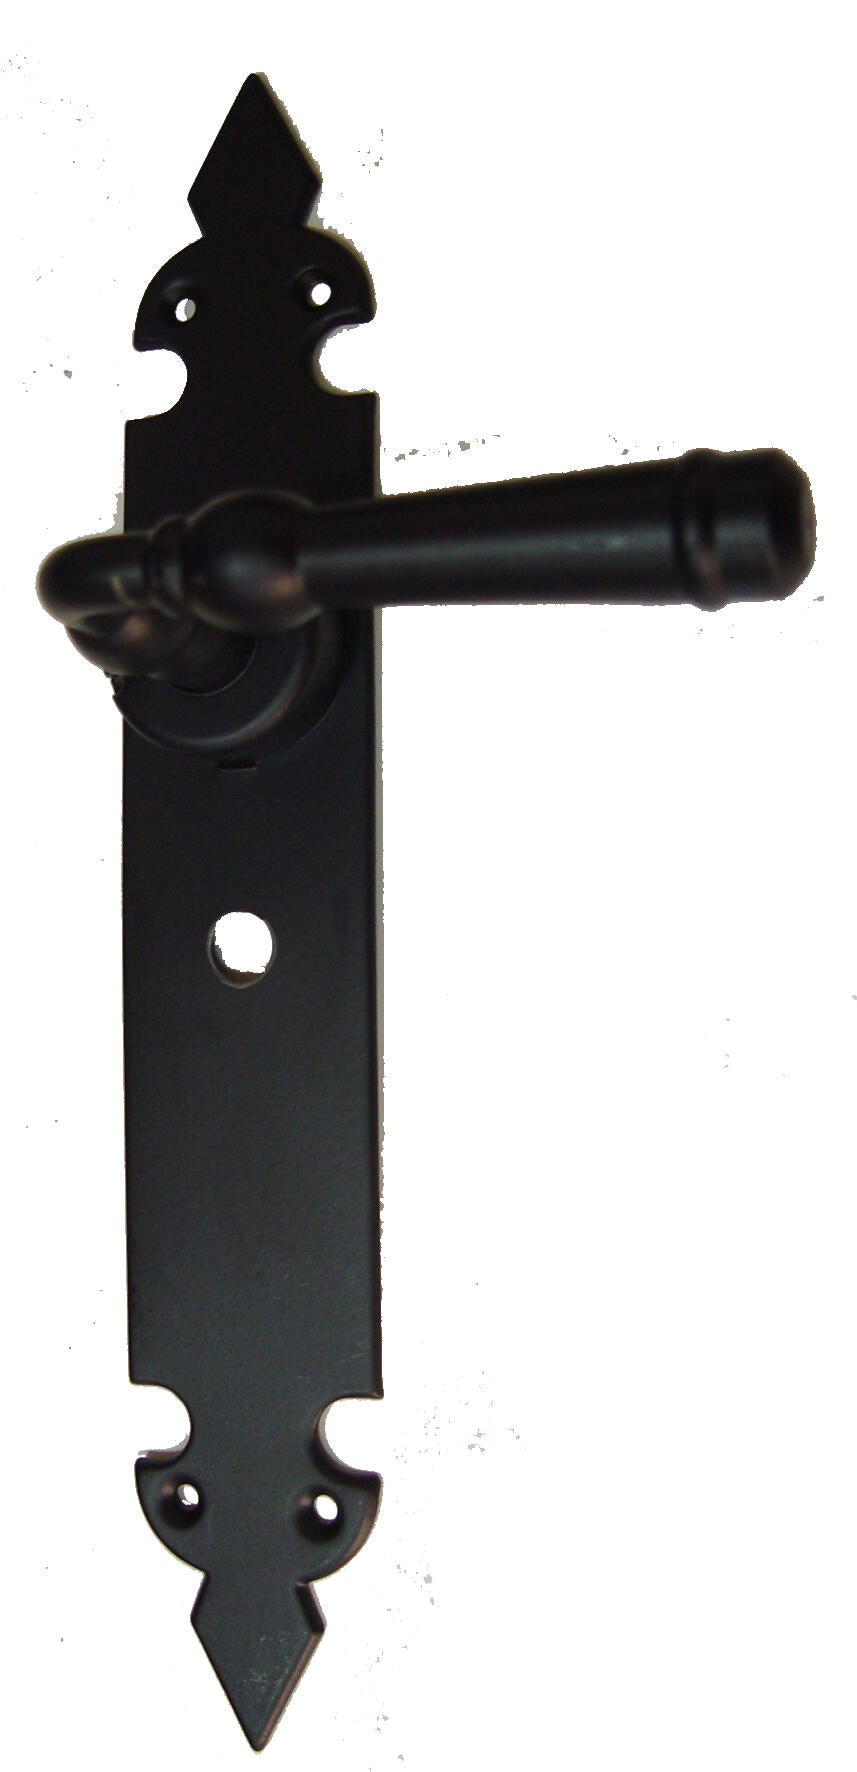 Manilla de placa de puerta bl-73173-c47 de hierro epoxi